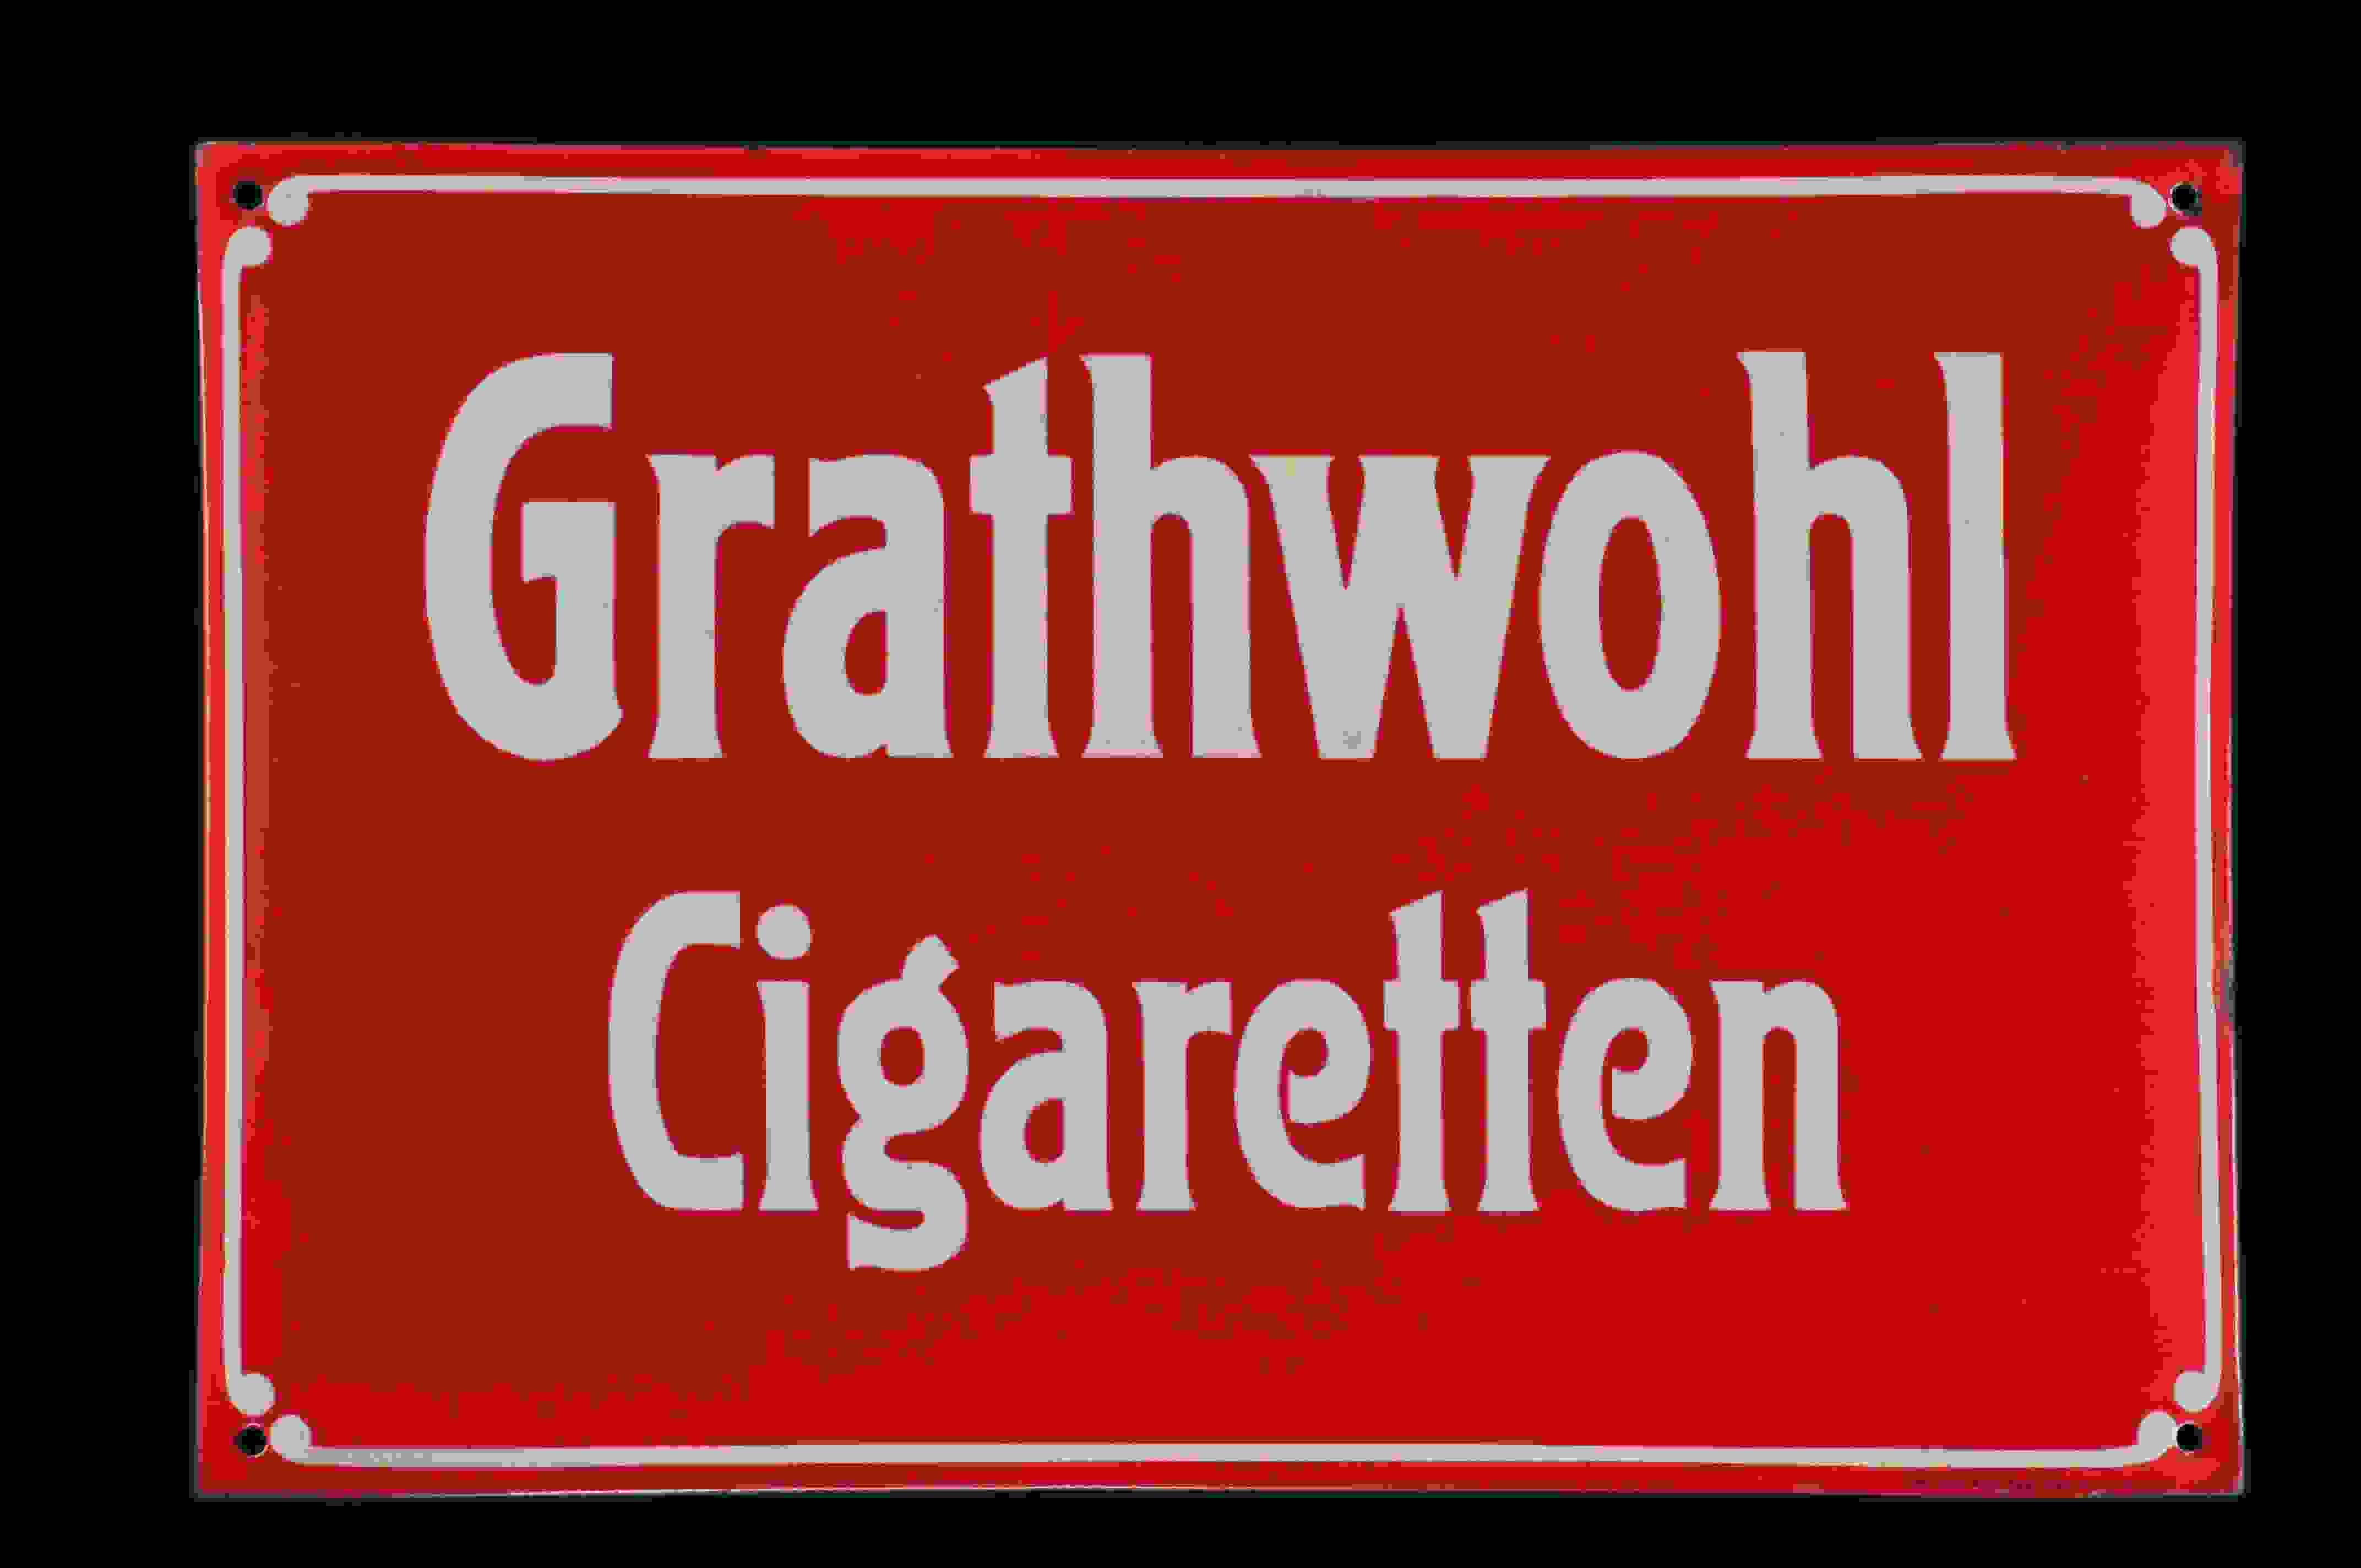 Grathwohl Cigaretten 